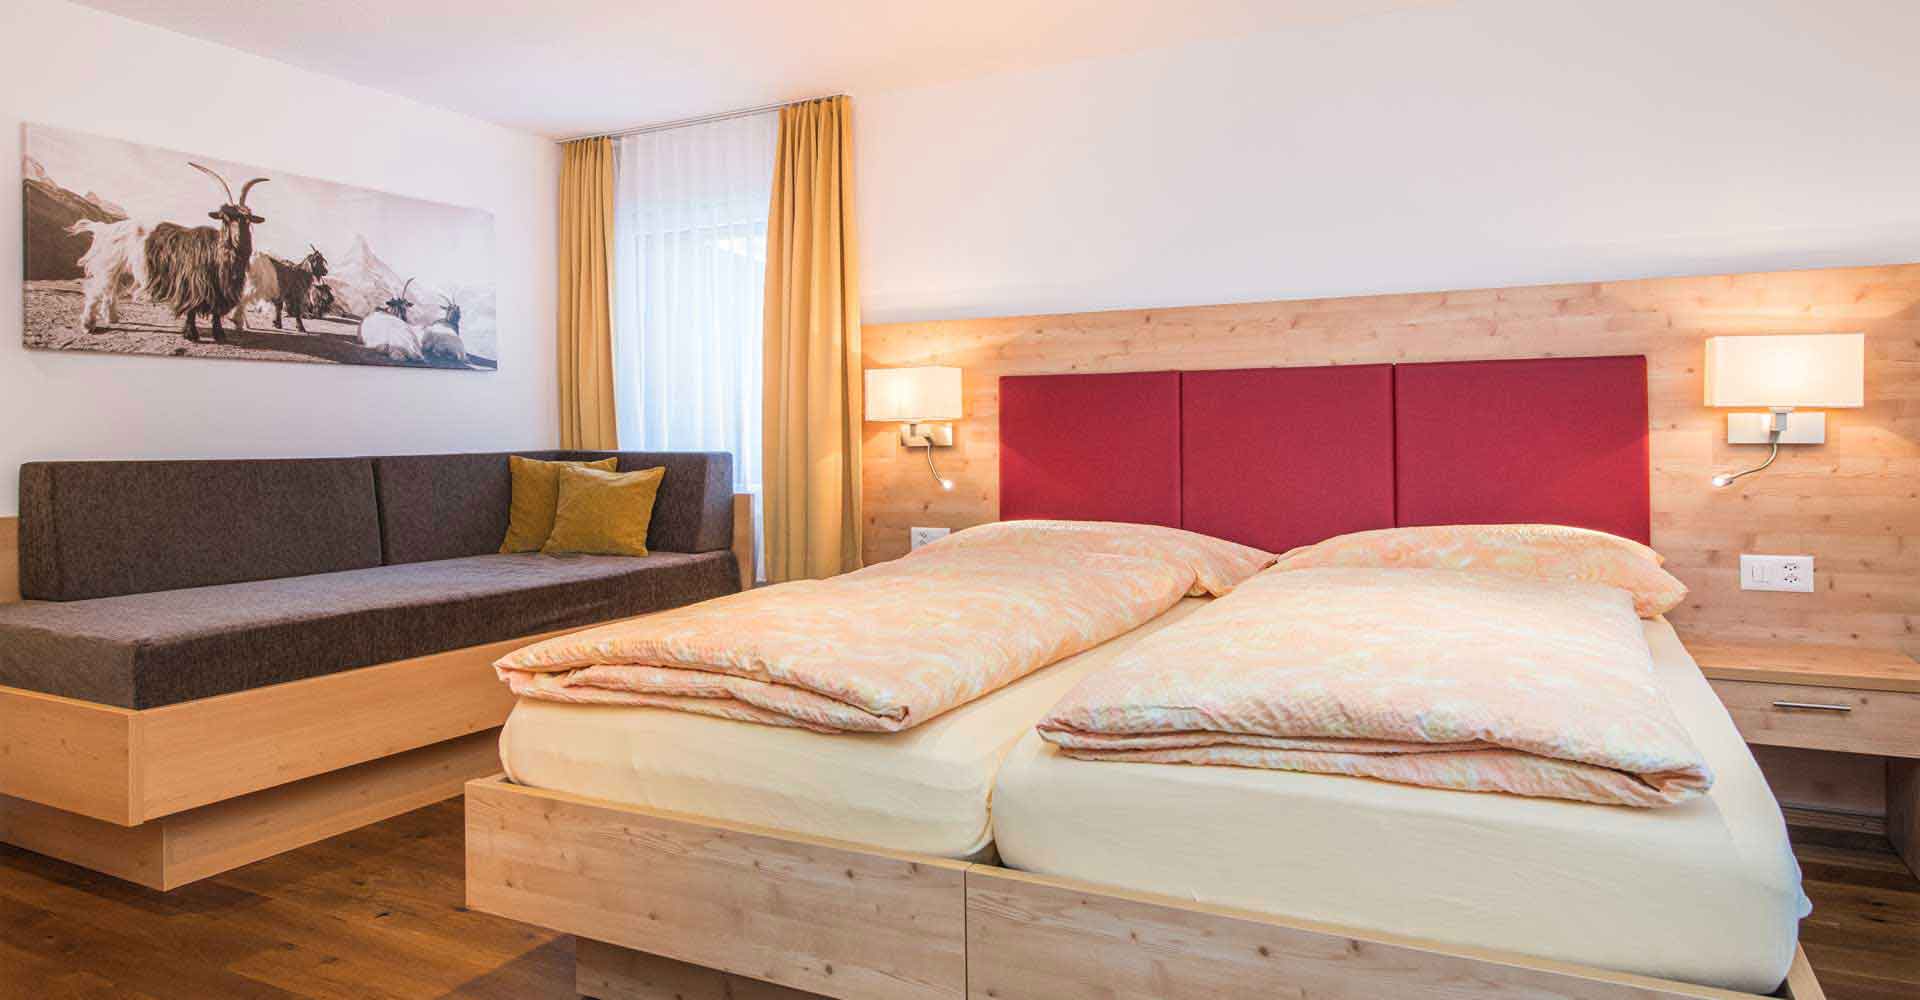 Appartement de vacances à Zermatt avec salle de séjour